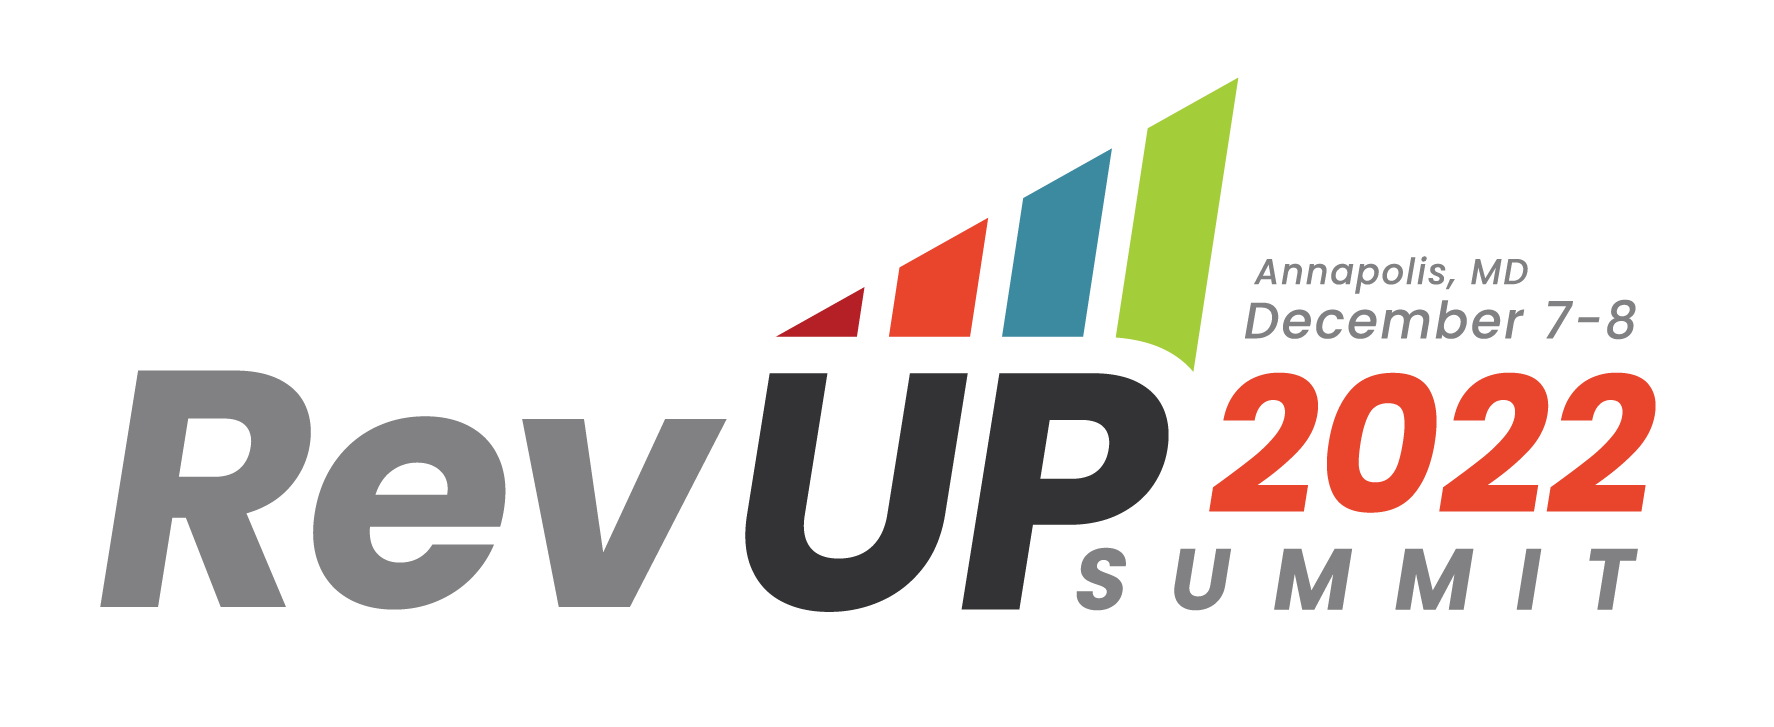 RevUP Summit 2022